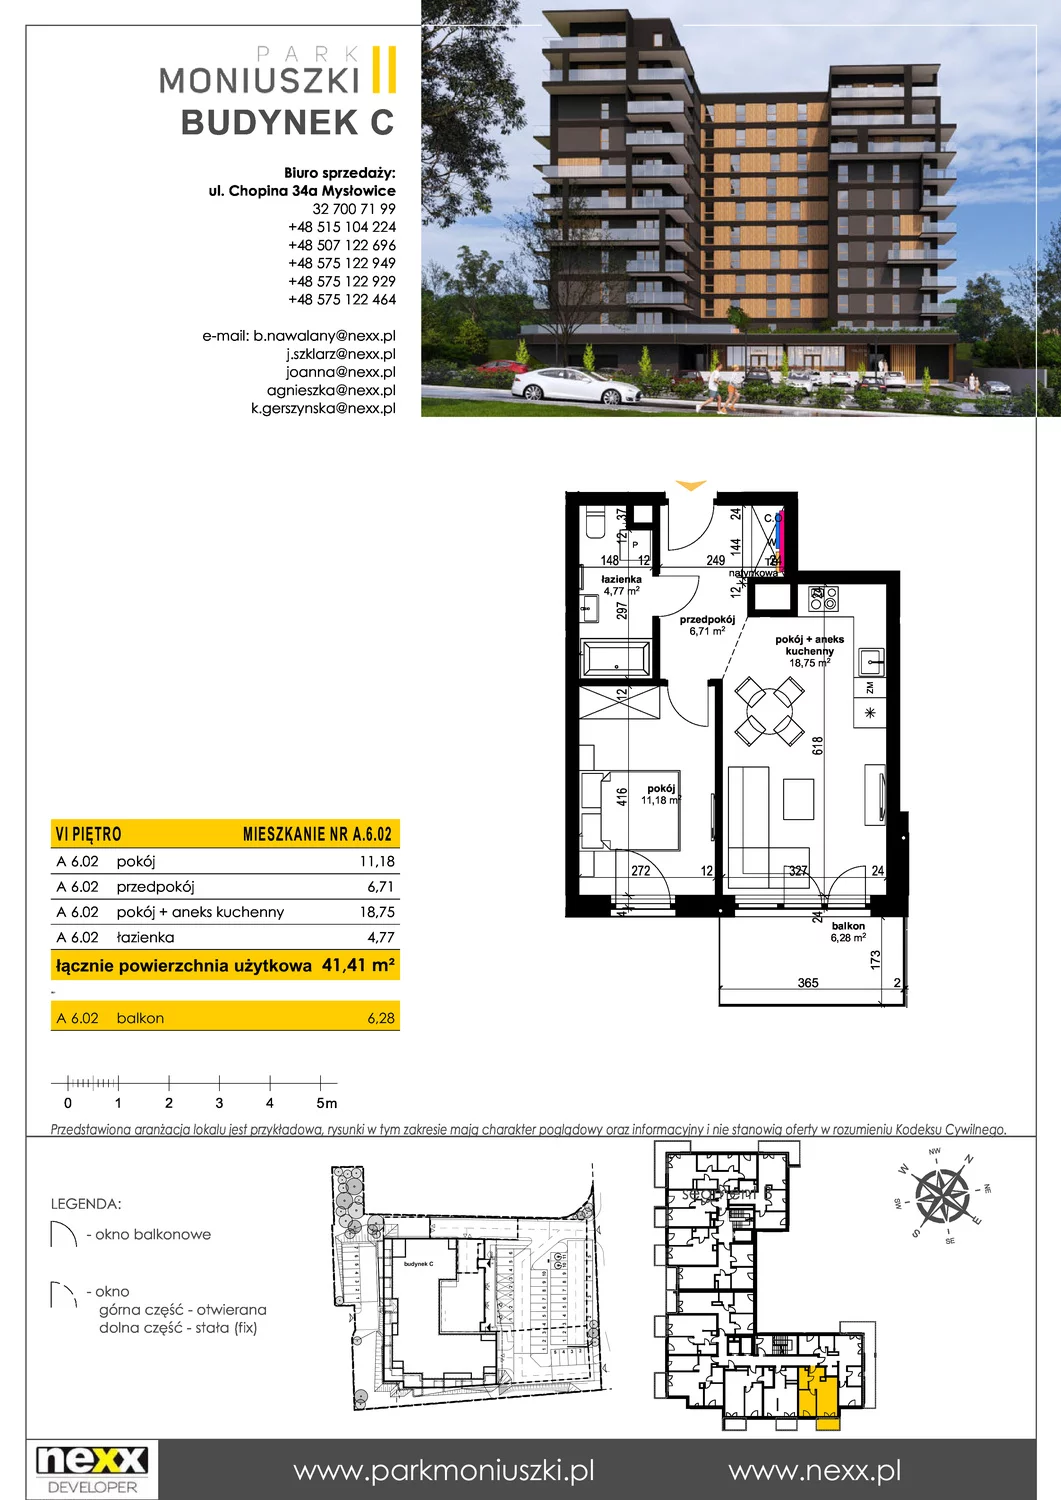 Mieszkanie 41,30 m², piętro 6, oferta nr A 6.02, Osiedle Park Moniuszki, Mysłowice, ul. Okrzei / Wielka Skotnica